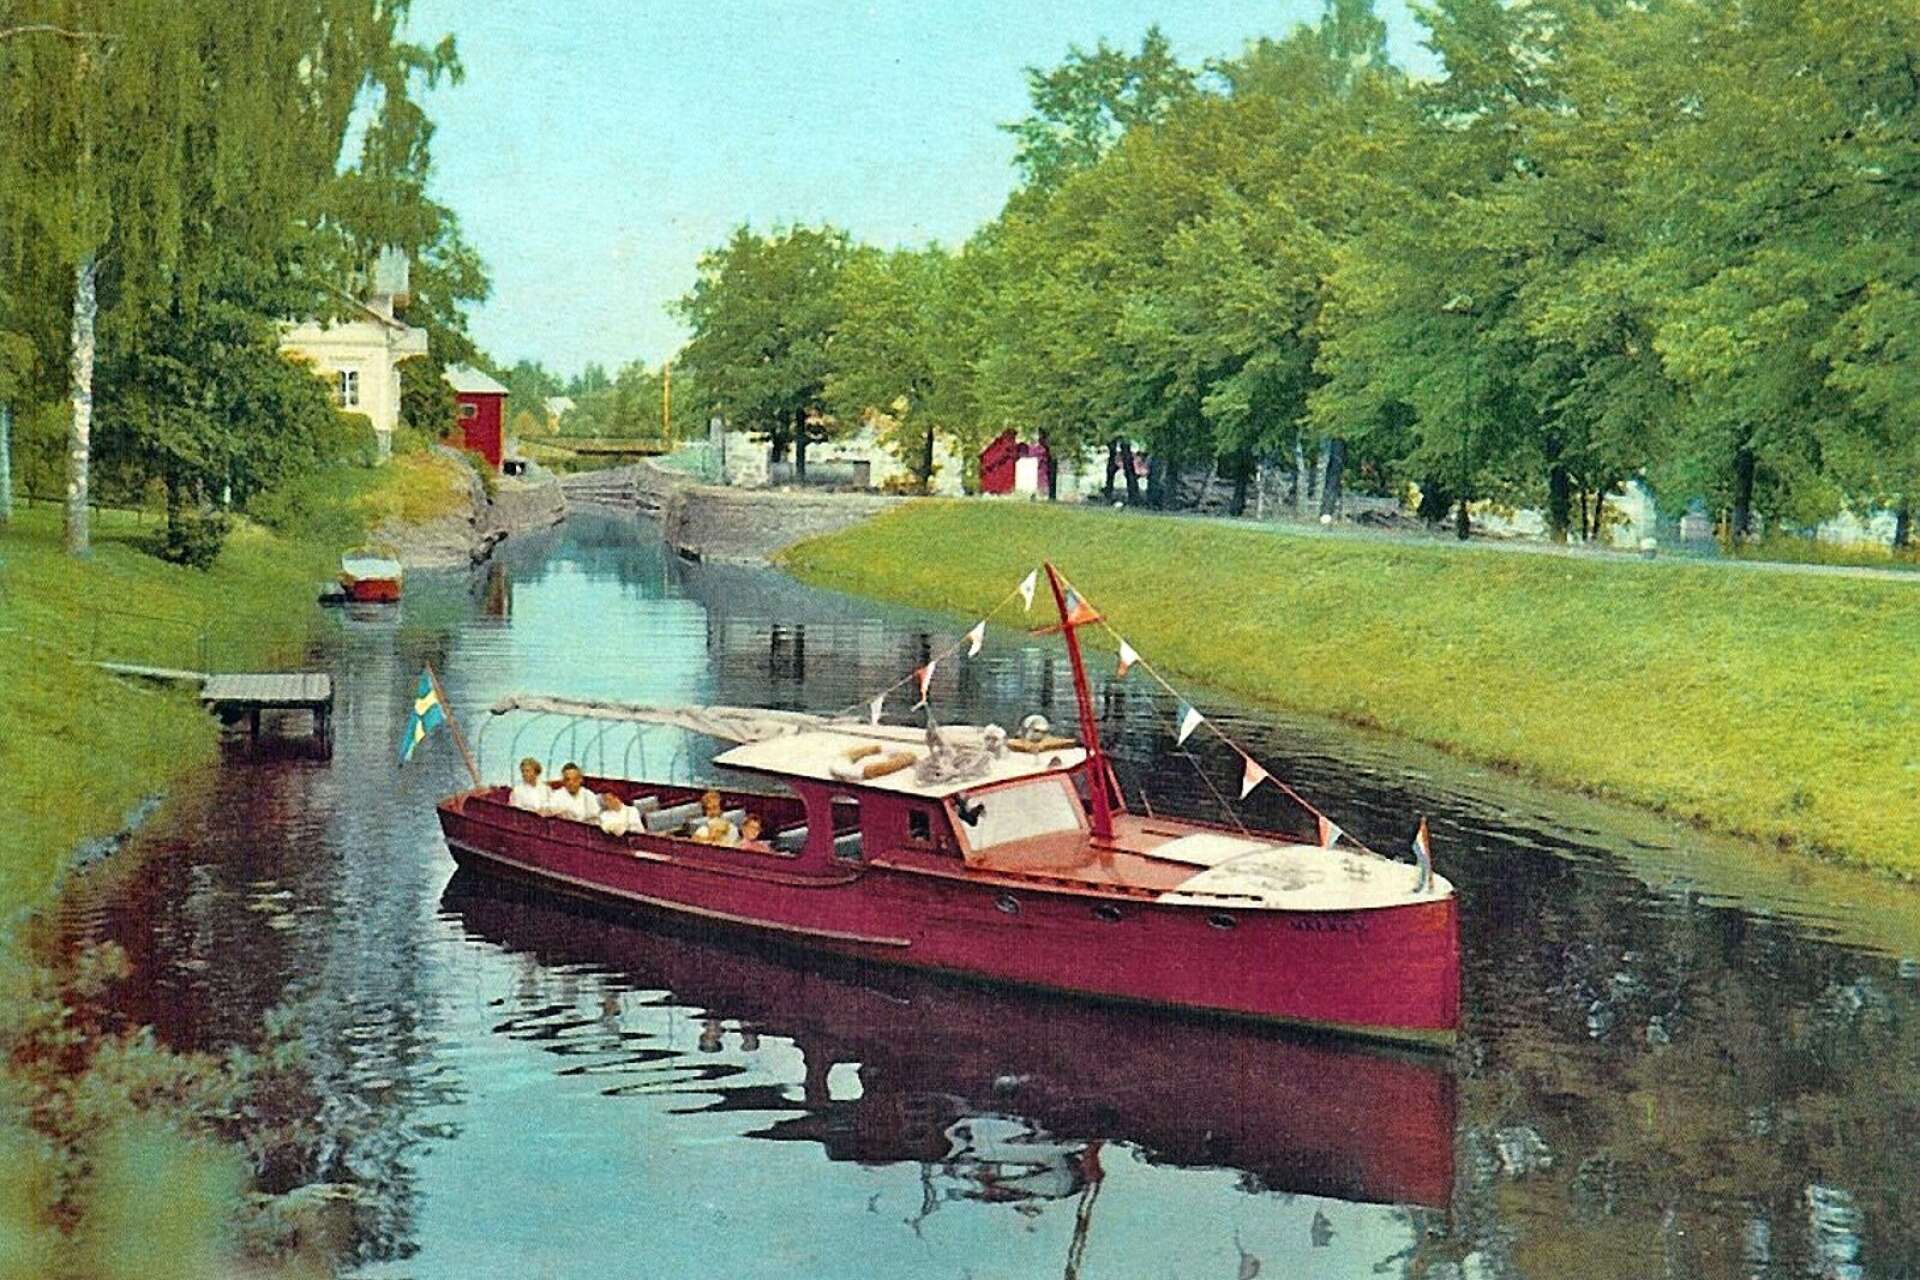 Äldre Säfflebor minns säkert fortfarande turistbåten Näcken. Det var Nike, byggd hos Jakobssons, som hade döpts om till Näcken.